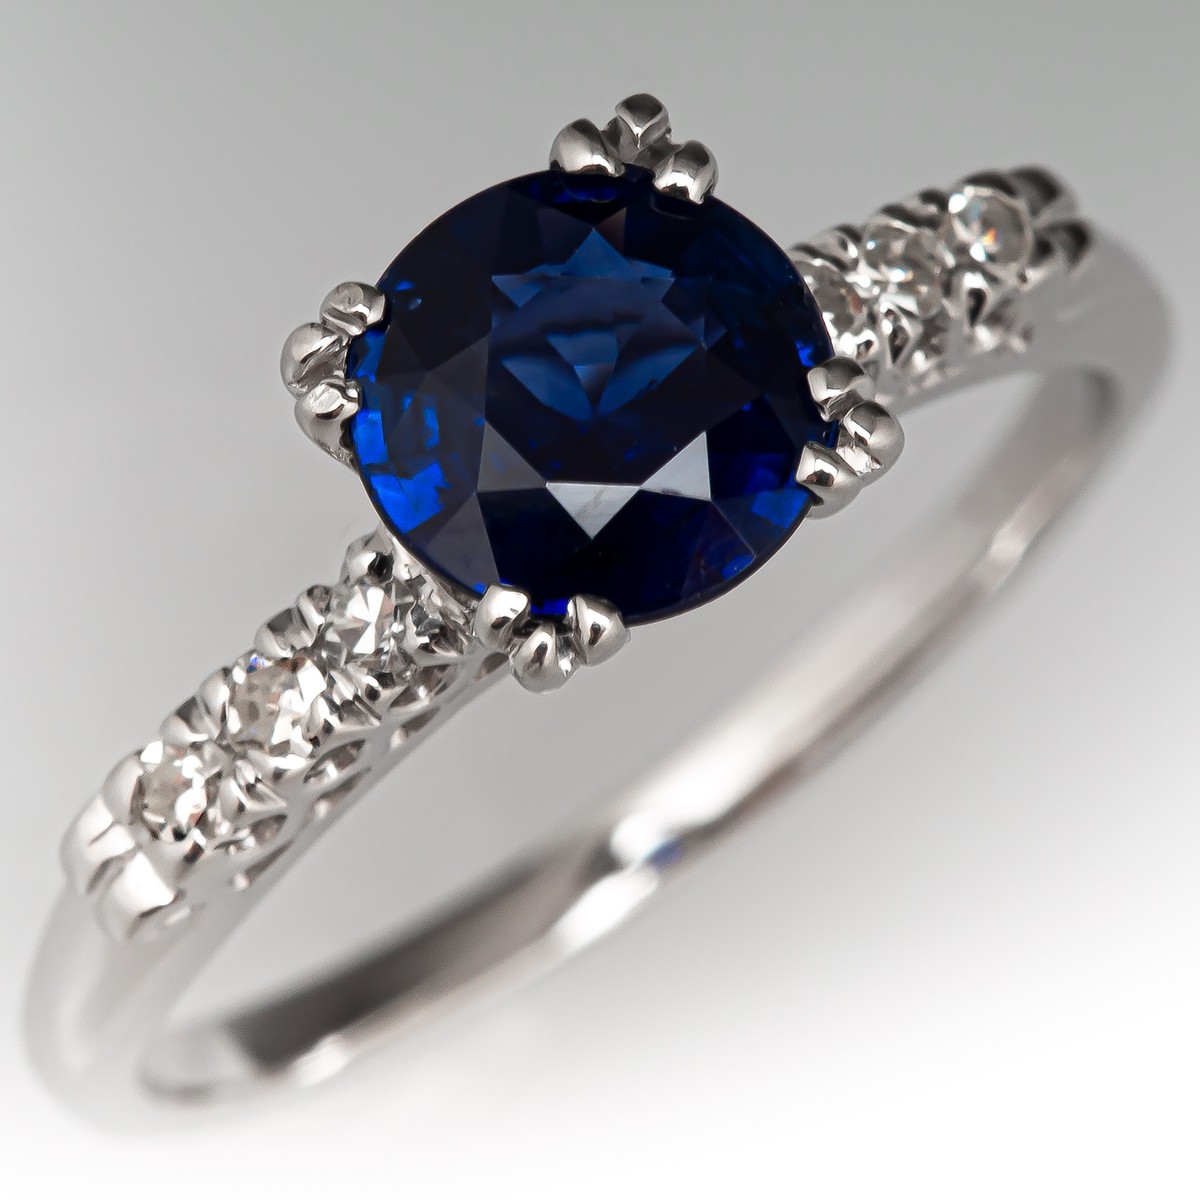 Geef energie Handvest verwerken Vivid Blue Sapphire Engagement Ring w/ Diamond Accents Vintage Platinum